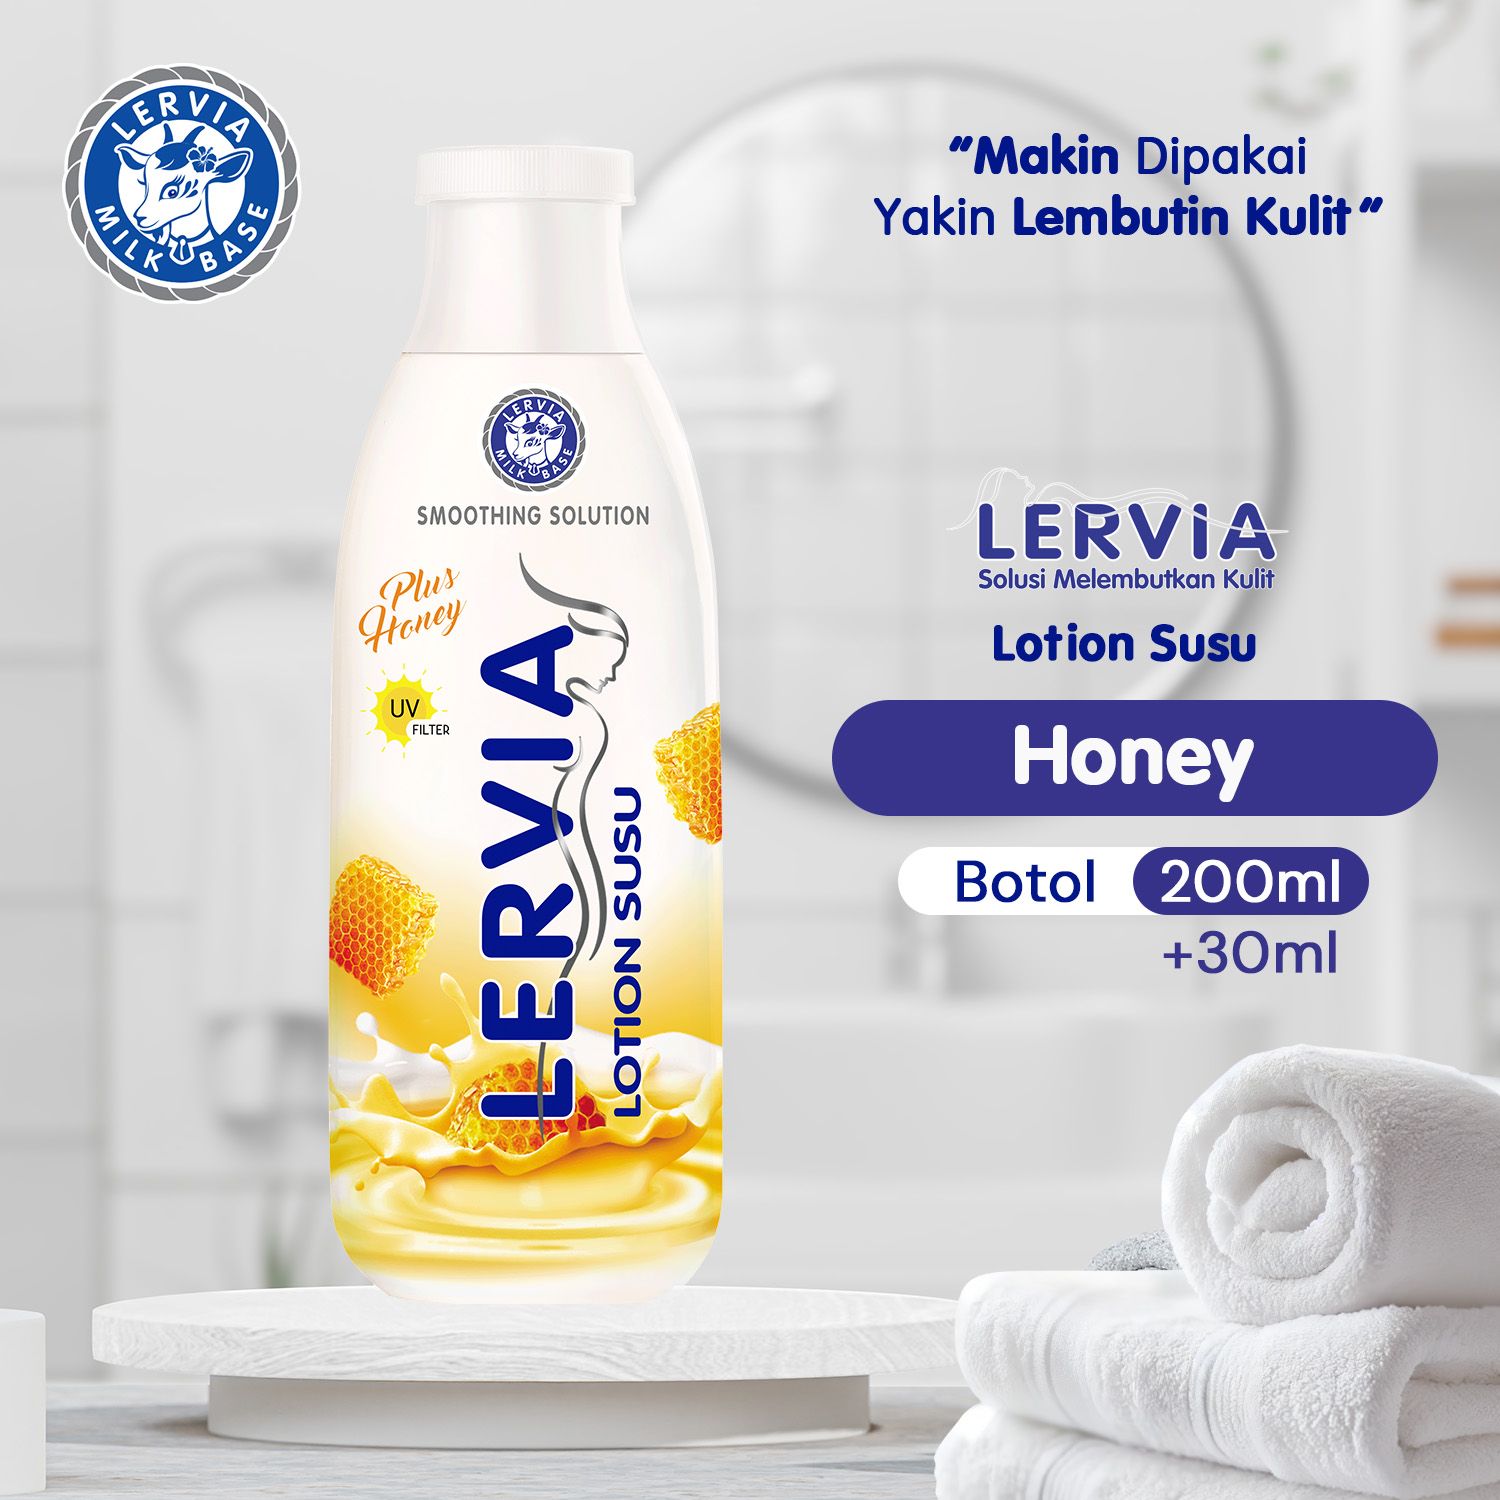 LERVIA Lotion Susu Plus Honey 200mL + 30mL - 1